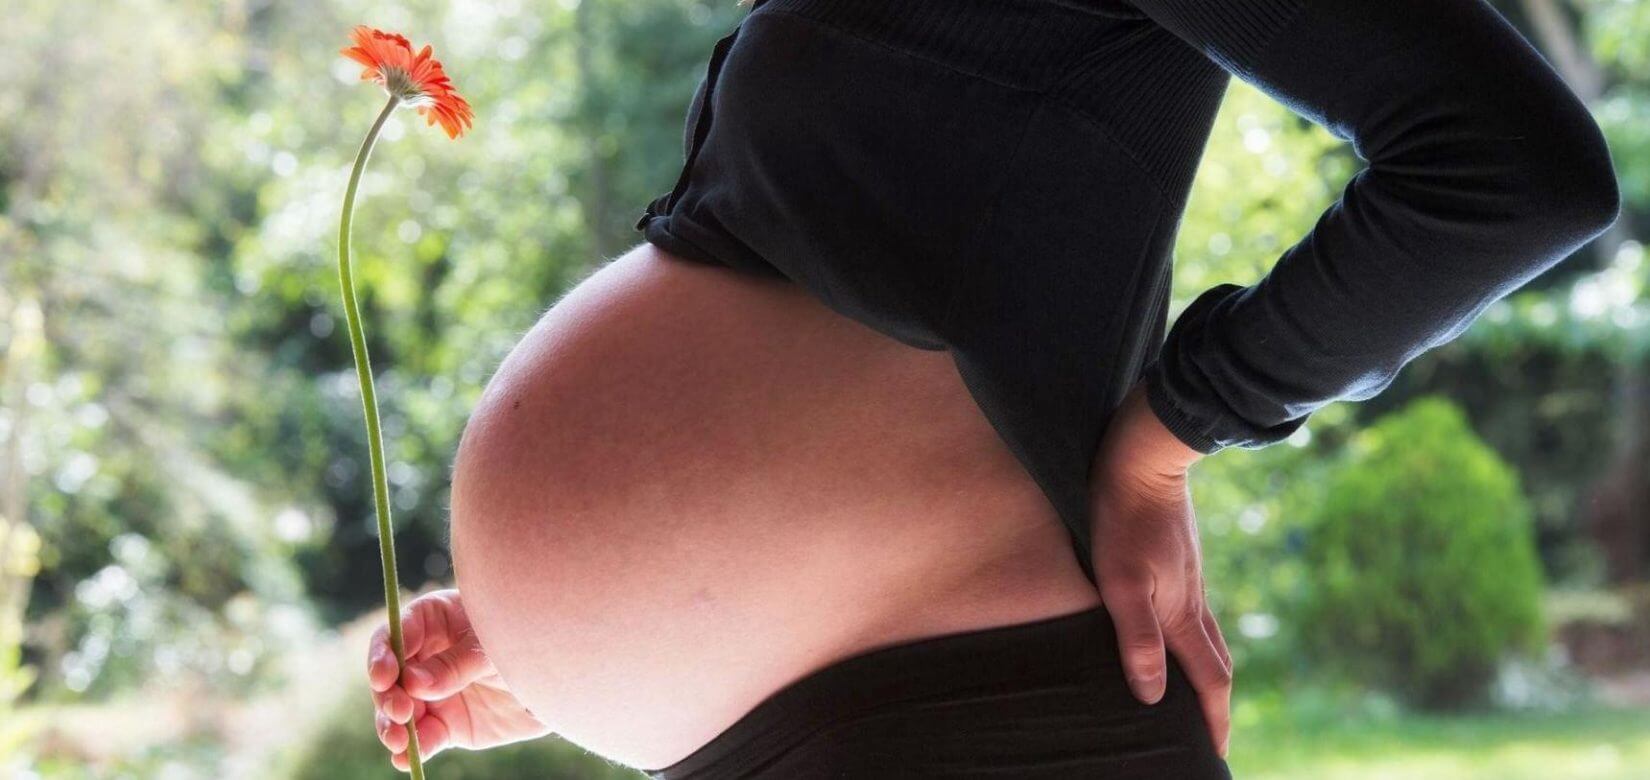 Εγκυμοσύνη: Καταρρίπτοντας απαγορευτικούς μύθους!